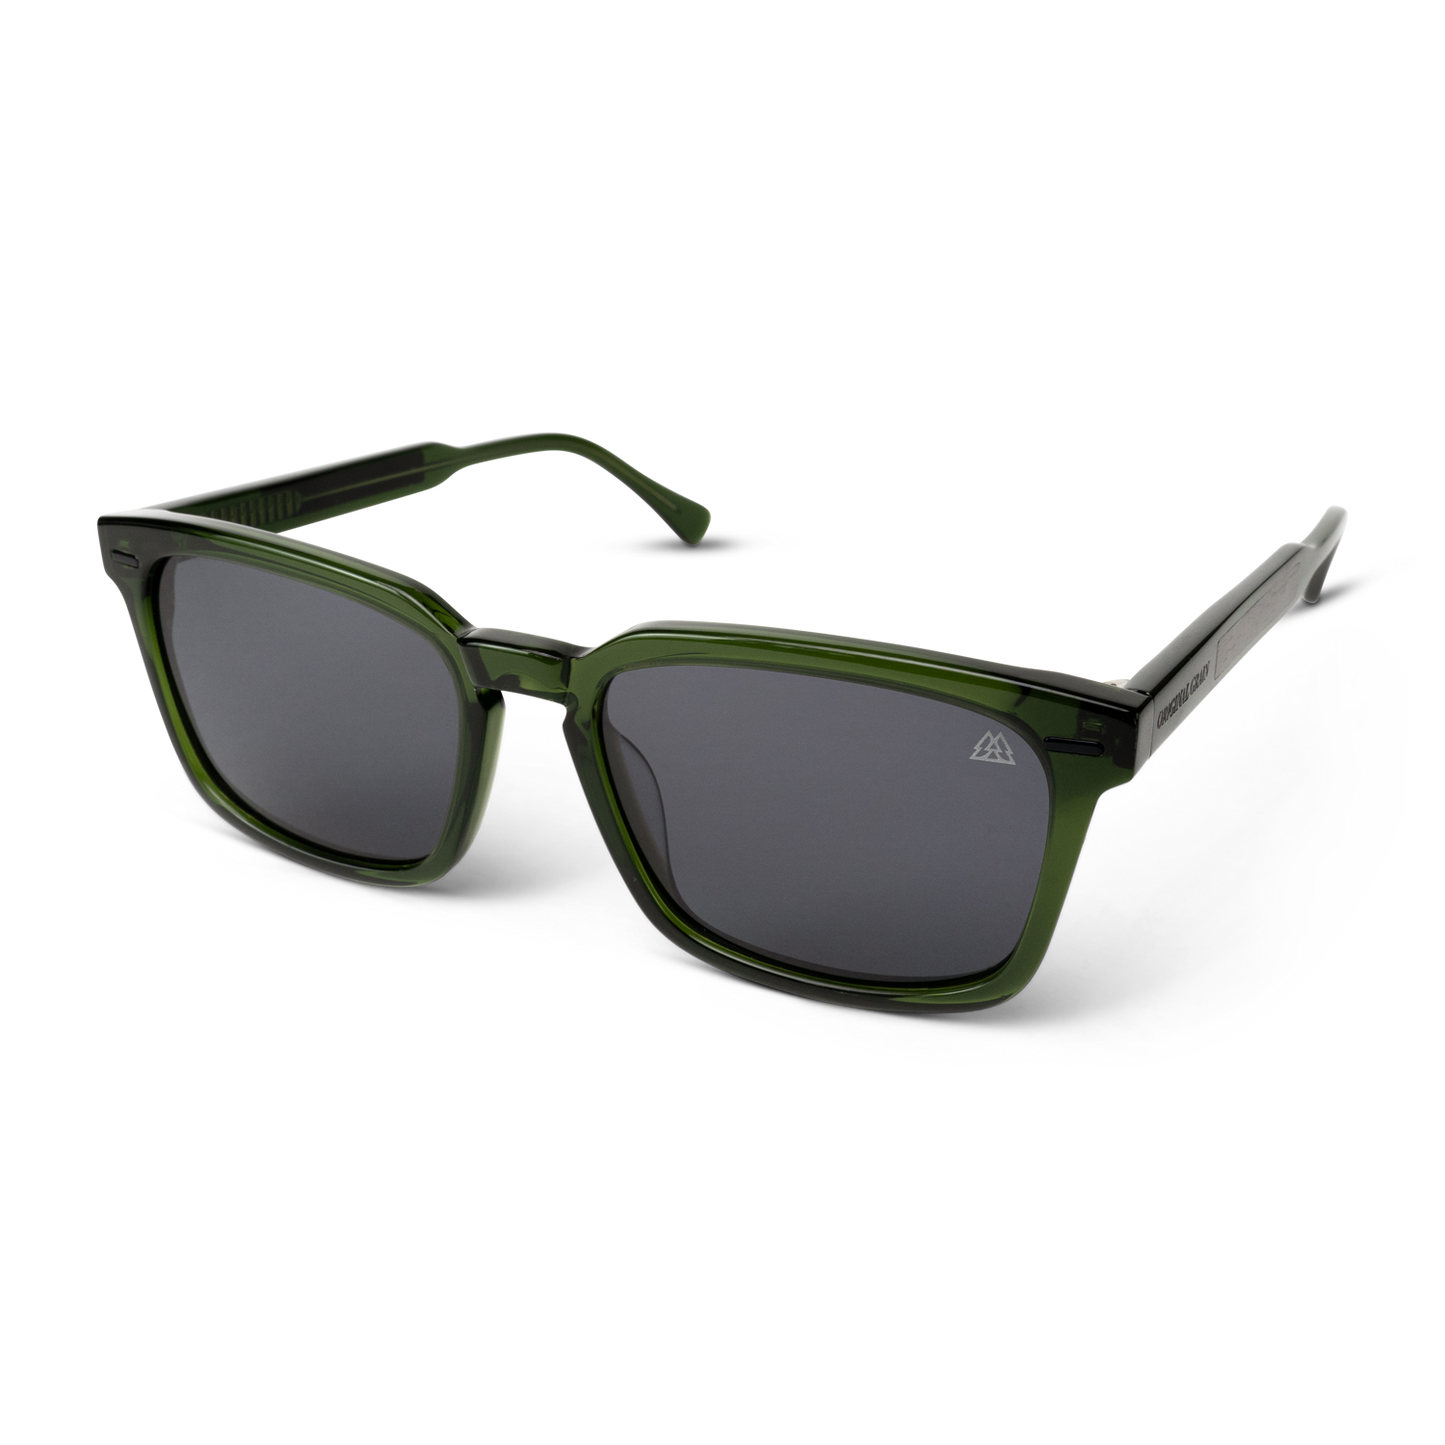 Sunset-Sonnenbrille aus schwarzem Walnussholz, transparent und grün